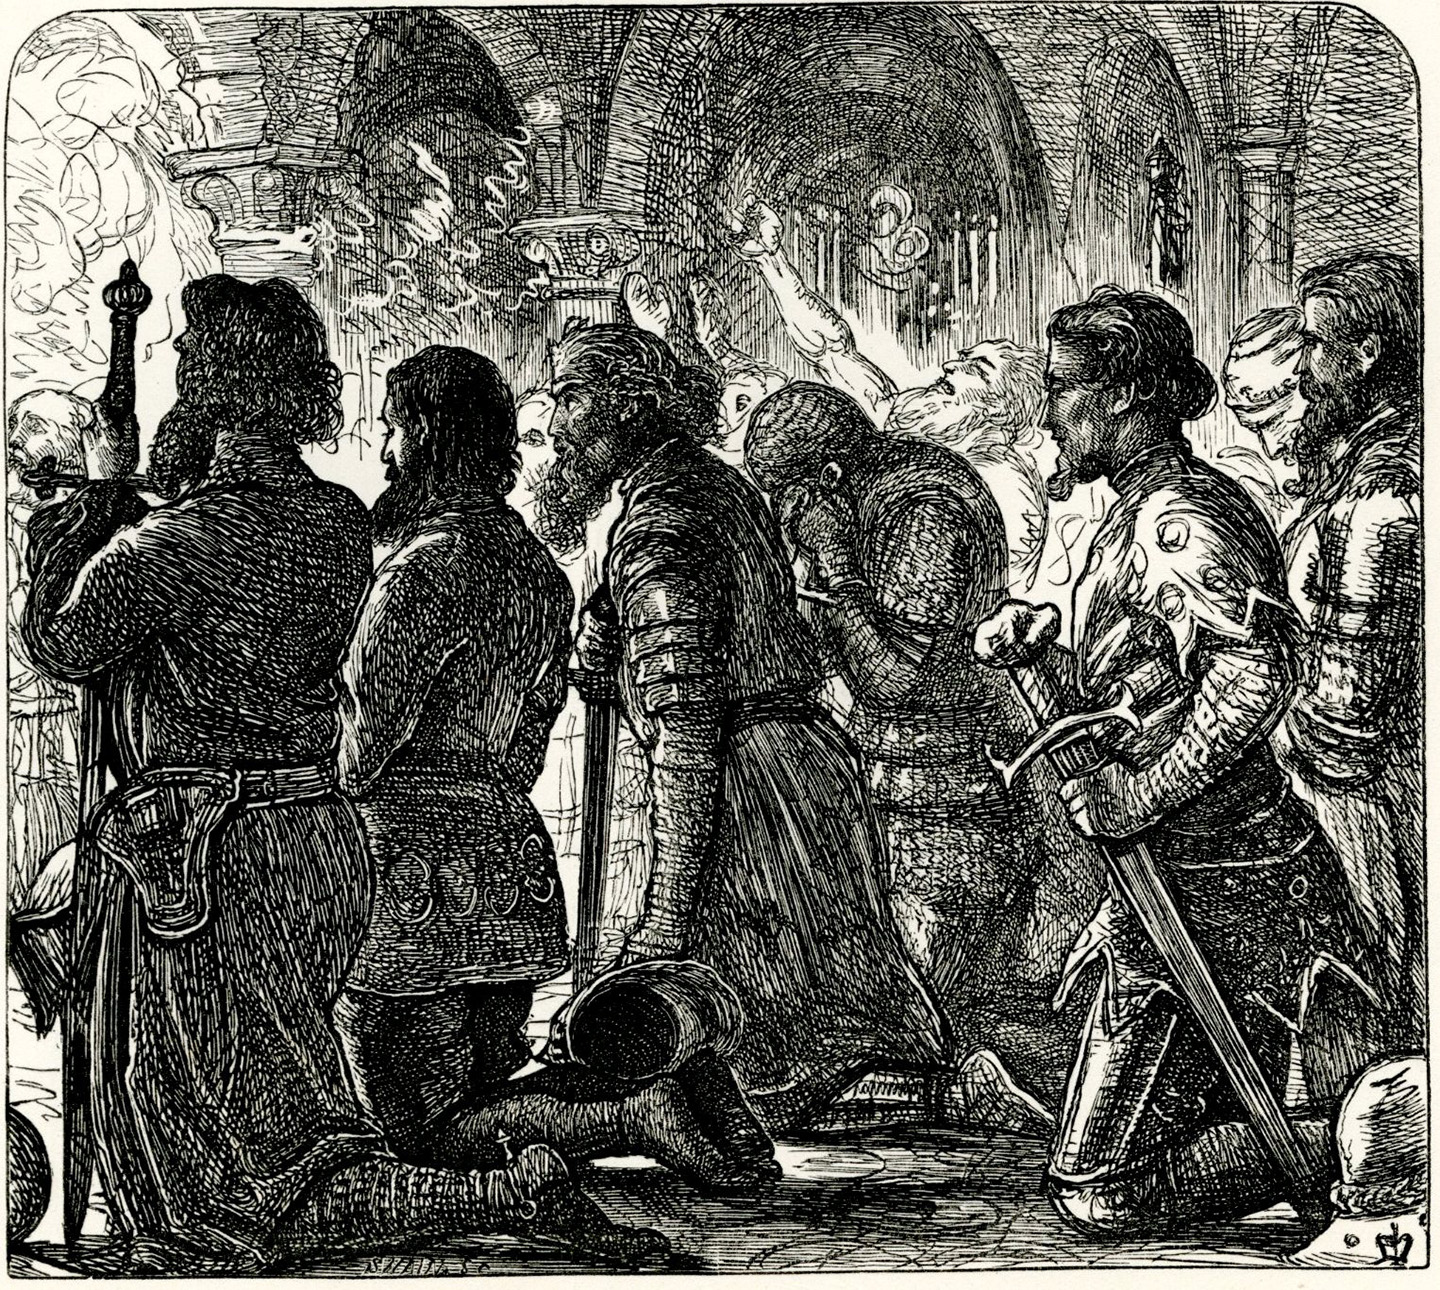 Hình minh họa các hiệp sỹ đang cầu nguyện trước Trận chiến Ba mươi, năm 1862, tác giả John Everett Millais. Trích từ sách “Những Bản Ballad và Bài Ca của Vùng Brittany” của Tom Taylor. (Ảnh: Tư liệu công cộng)